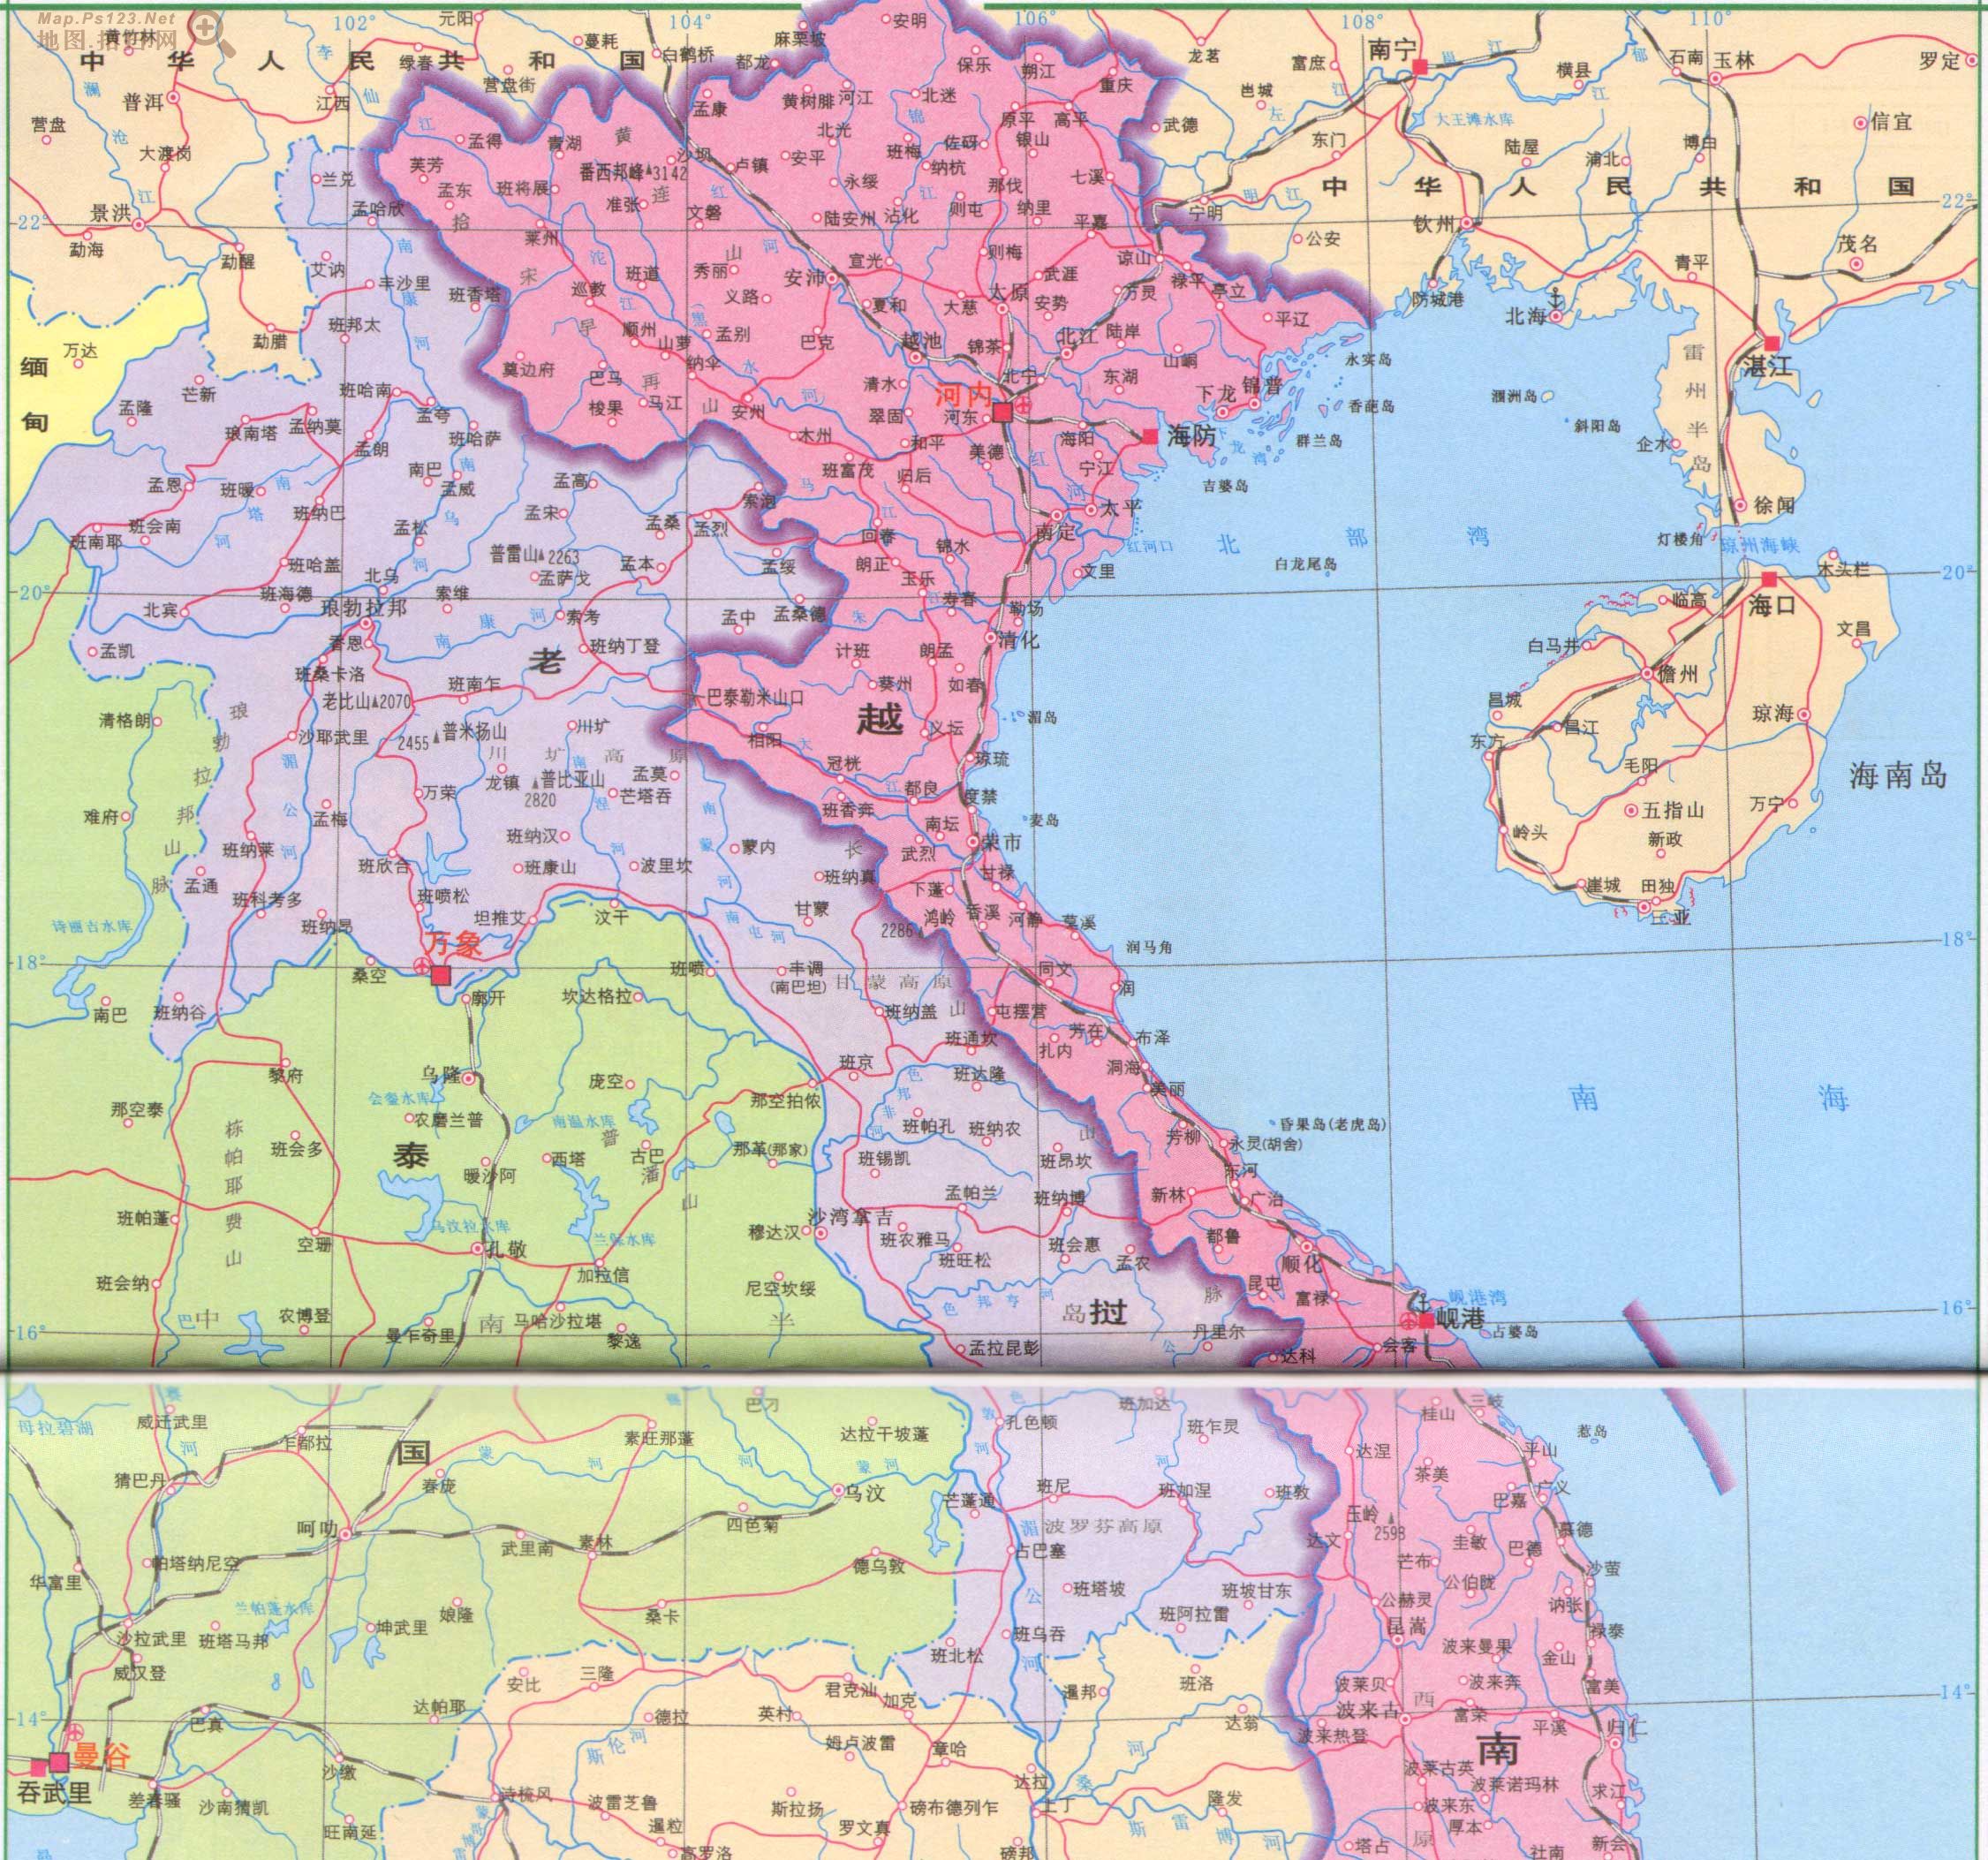 老挝地图猜成语_老挝地图